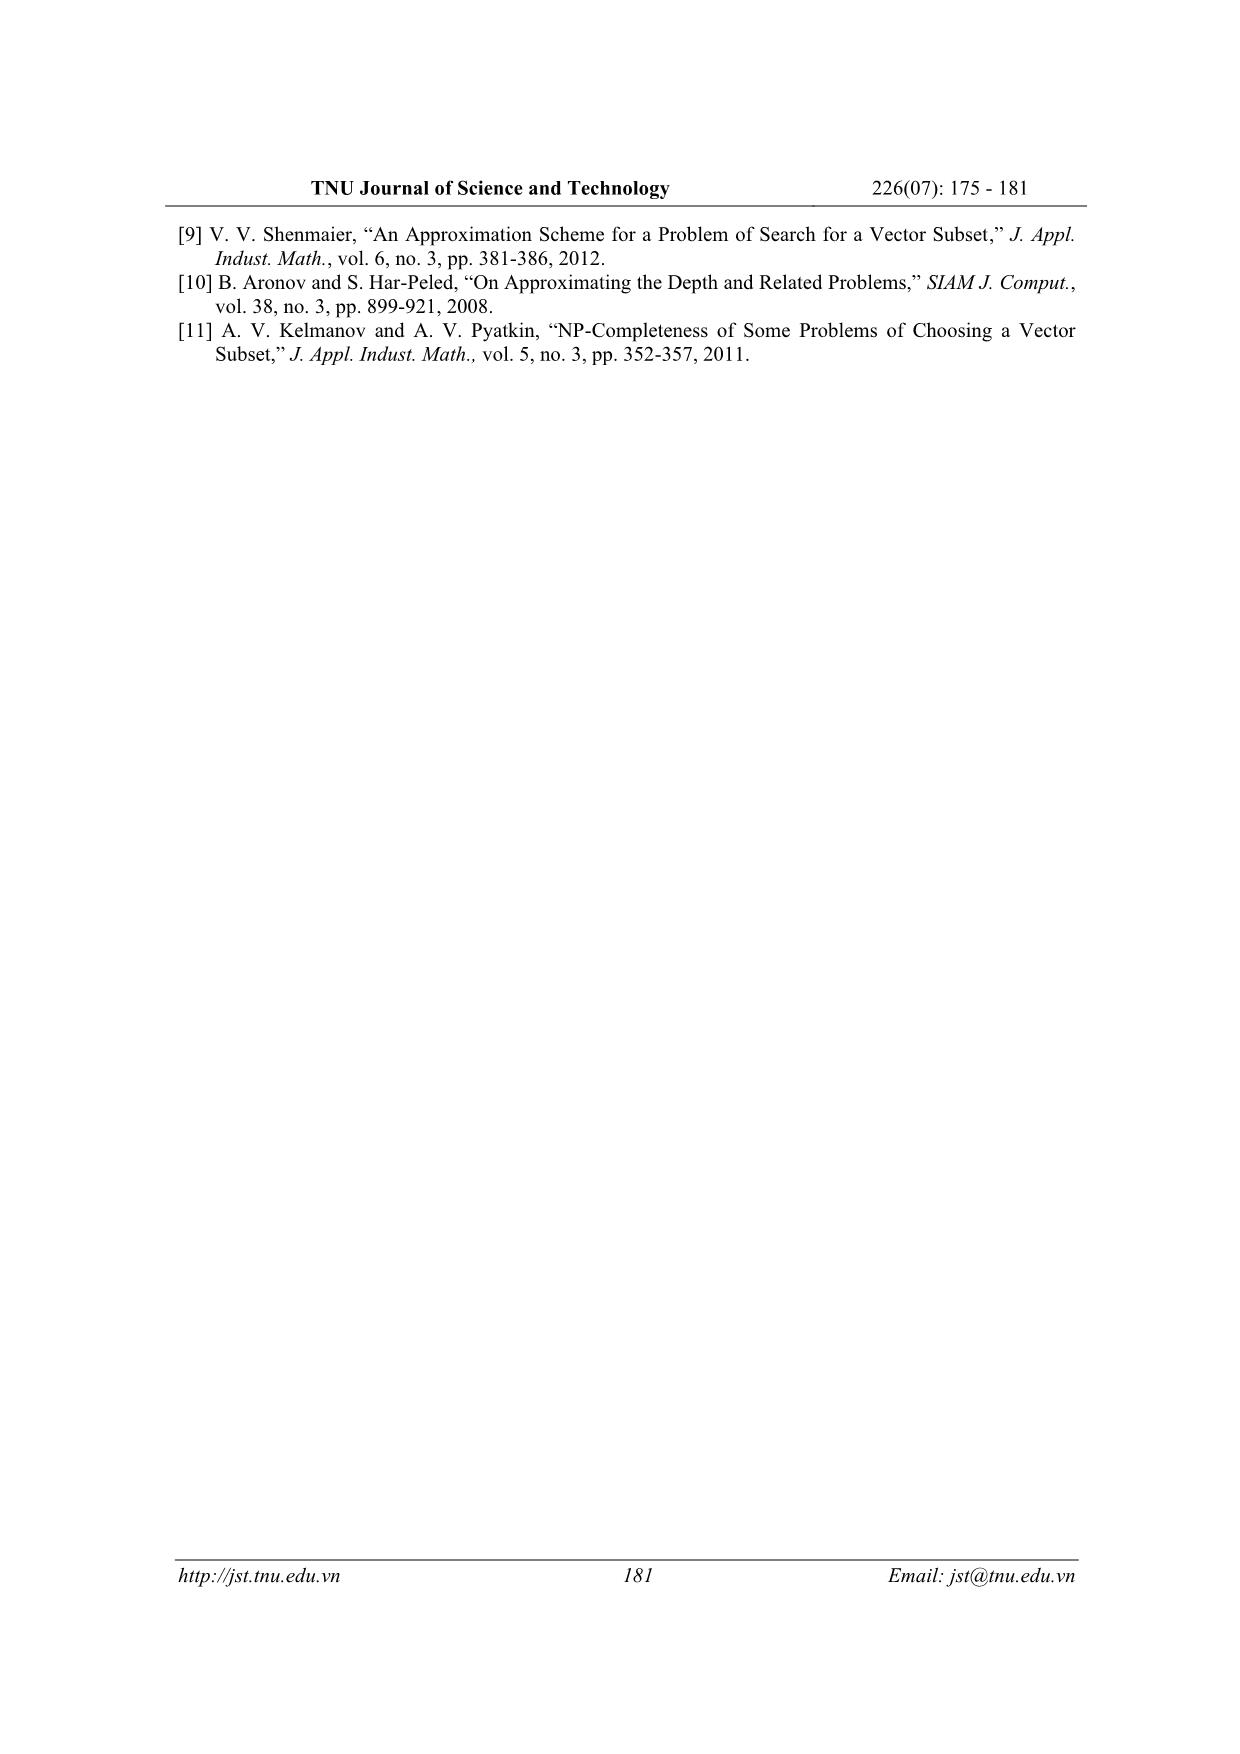 Thuật toán xấp xỉ và ứng dụng tìm nghiệm bài toán thuộc lớp NP - Khó trang 7